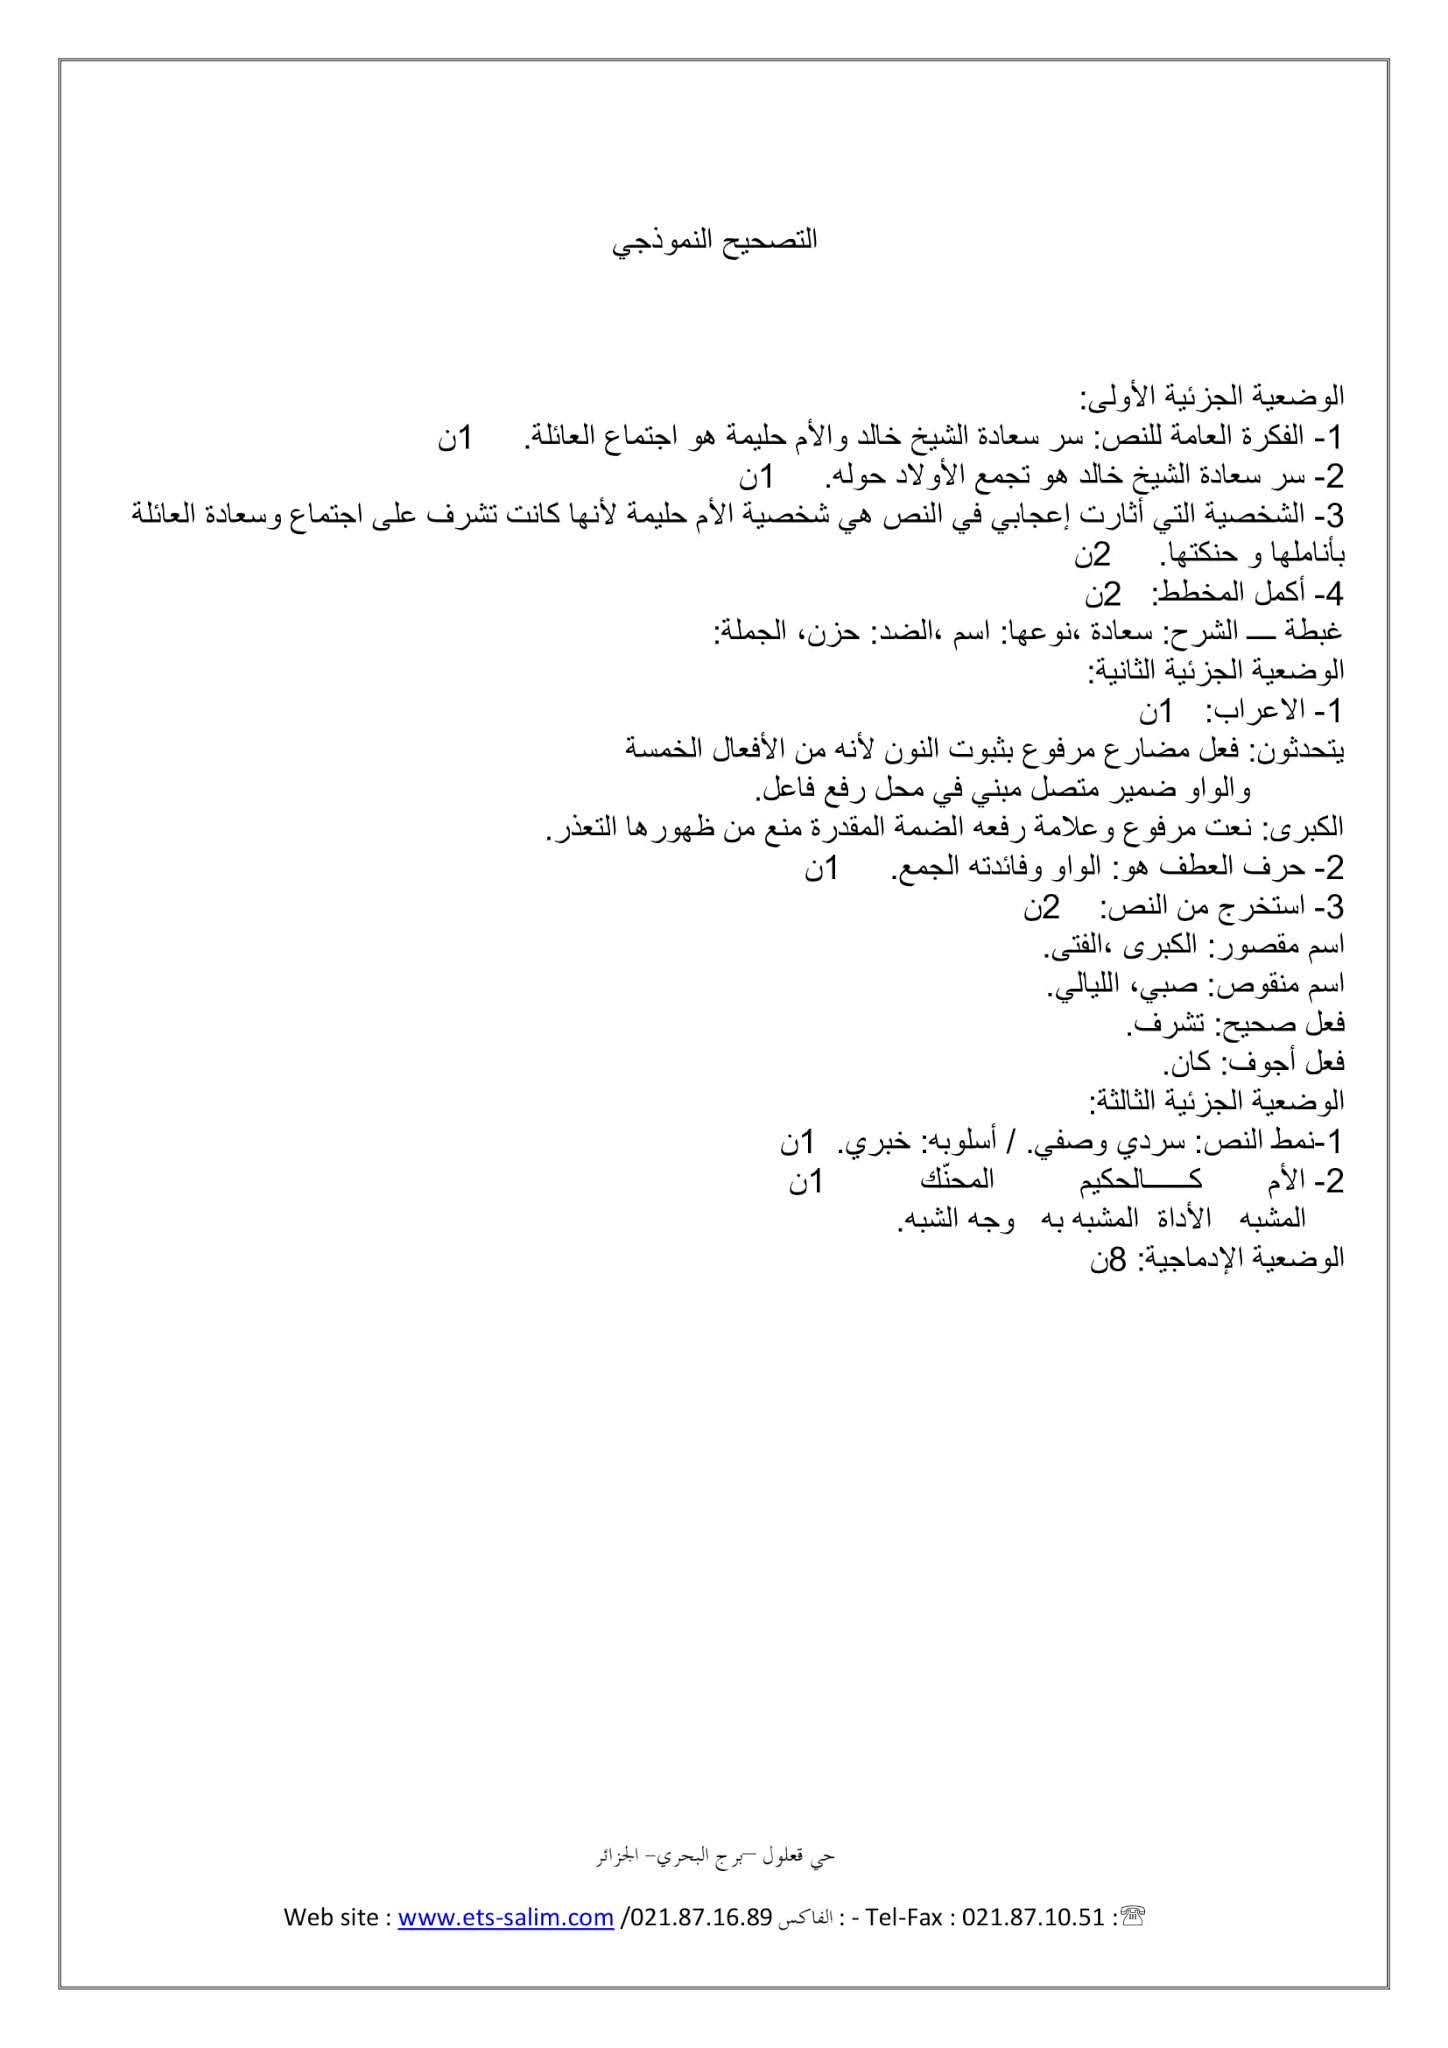 فرض اللغة العربية الفصل الأول للسنة الثانية متوسط - الجيل الثاني نموذج 4